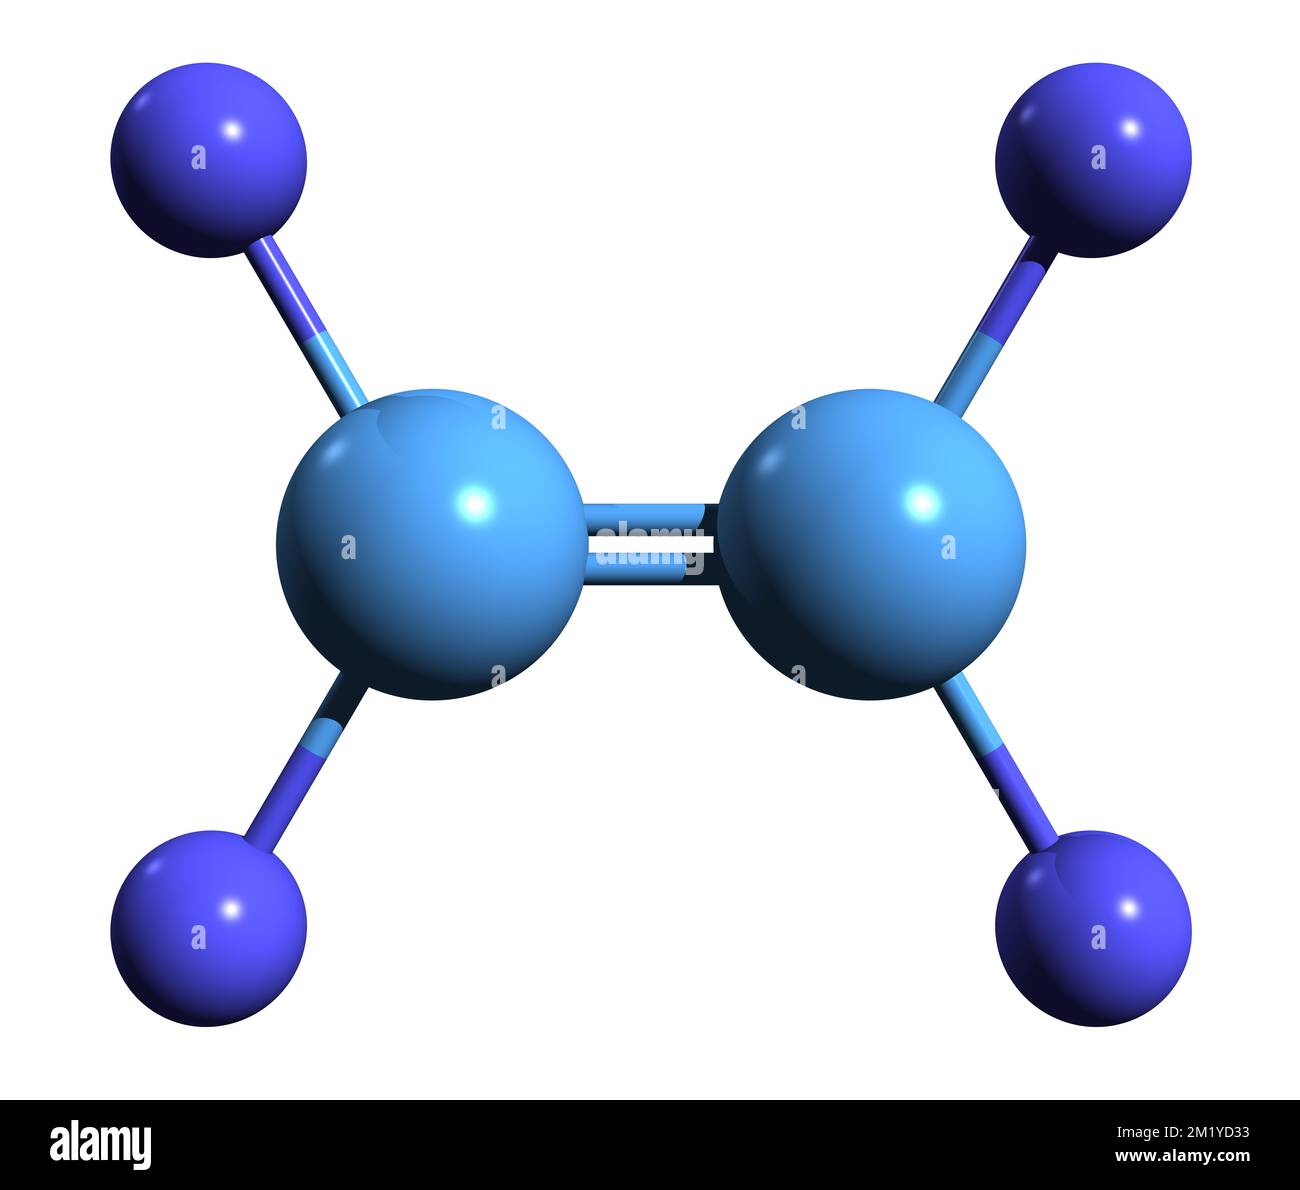 3D image of Tetrafluoroethylene skeletal formula - molecular chemical structure of perfluoroethylene isolated on white background Stock Photo